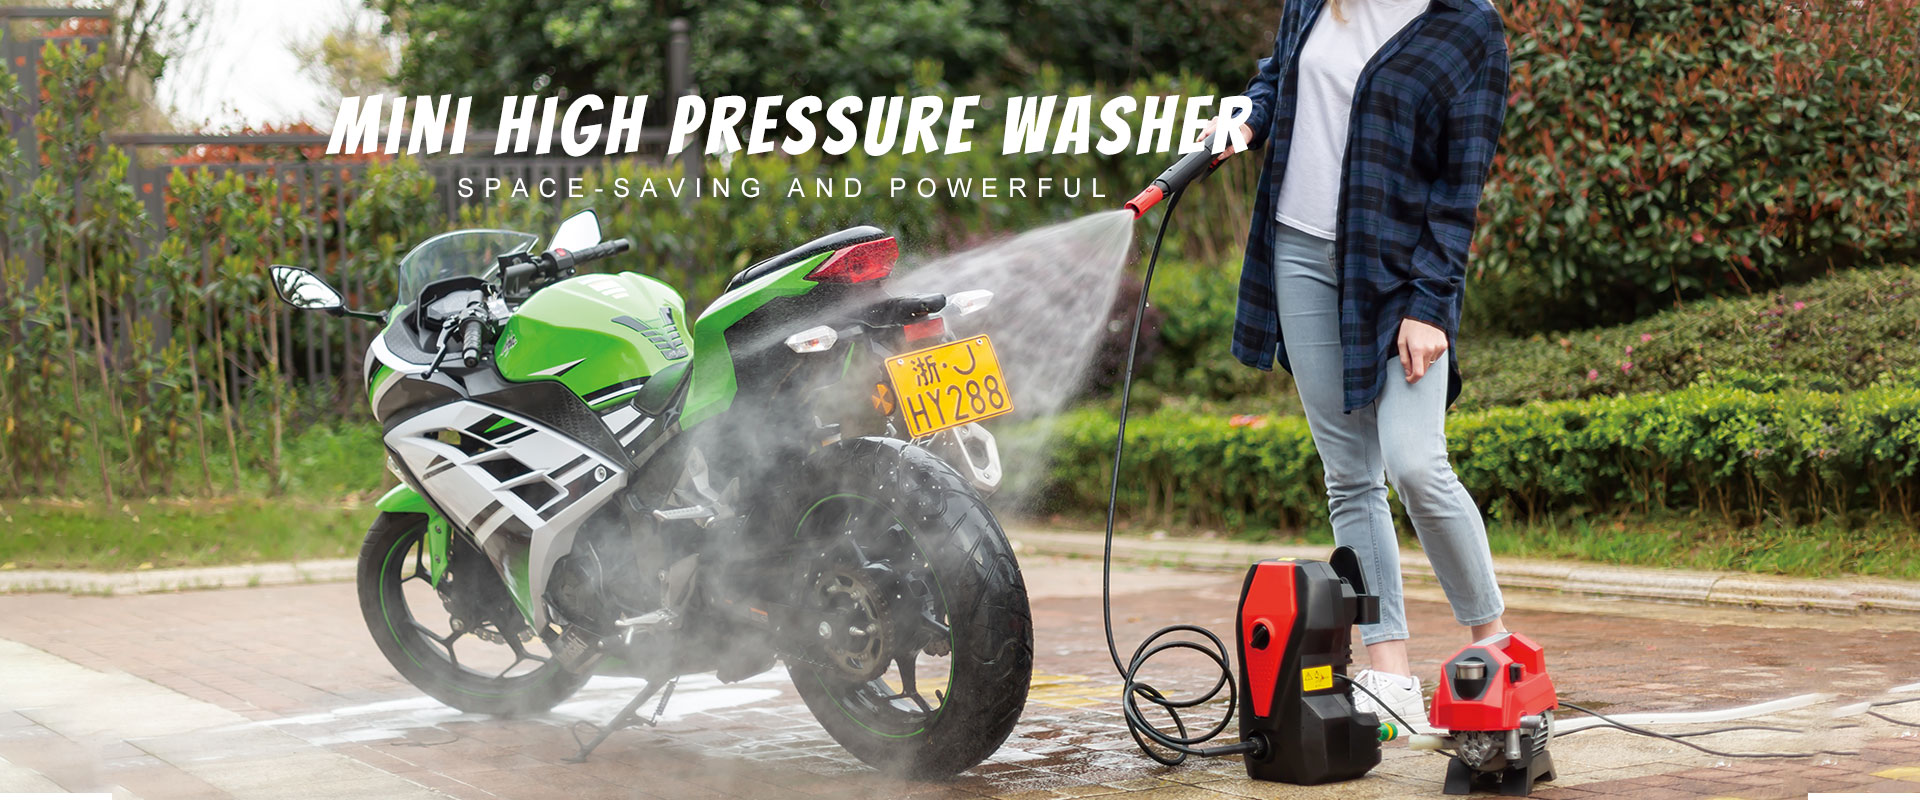 တရုတ် Pressure Washer ထုတ်လုပ်သူများ